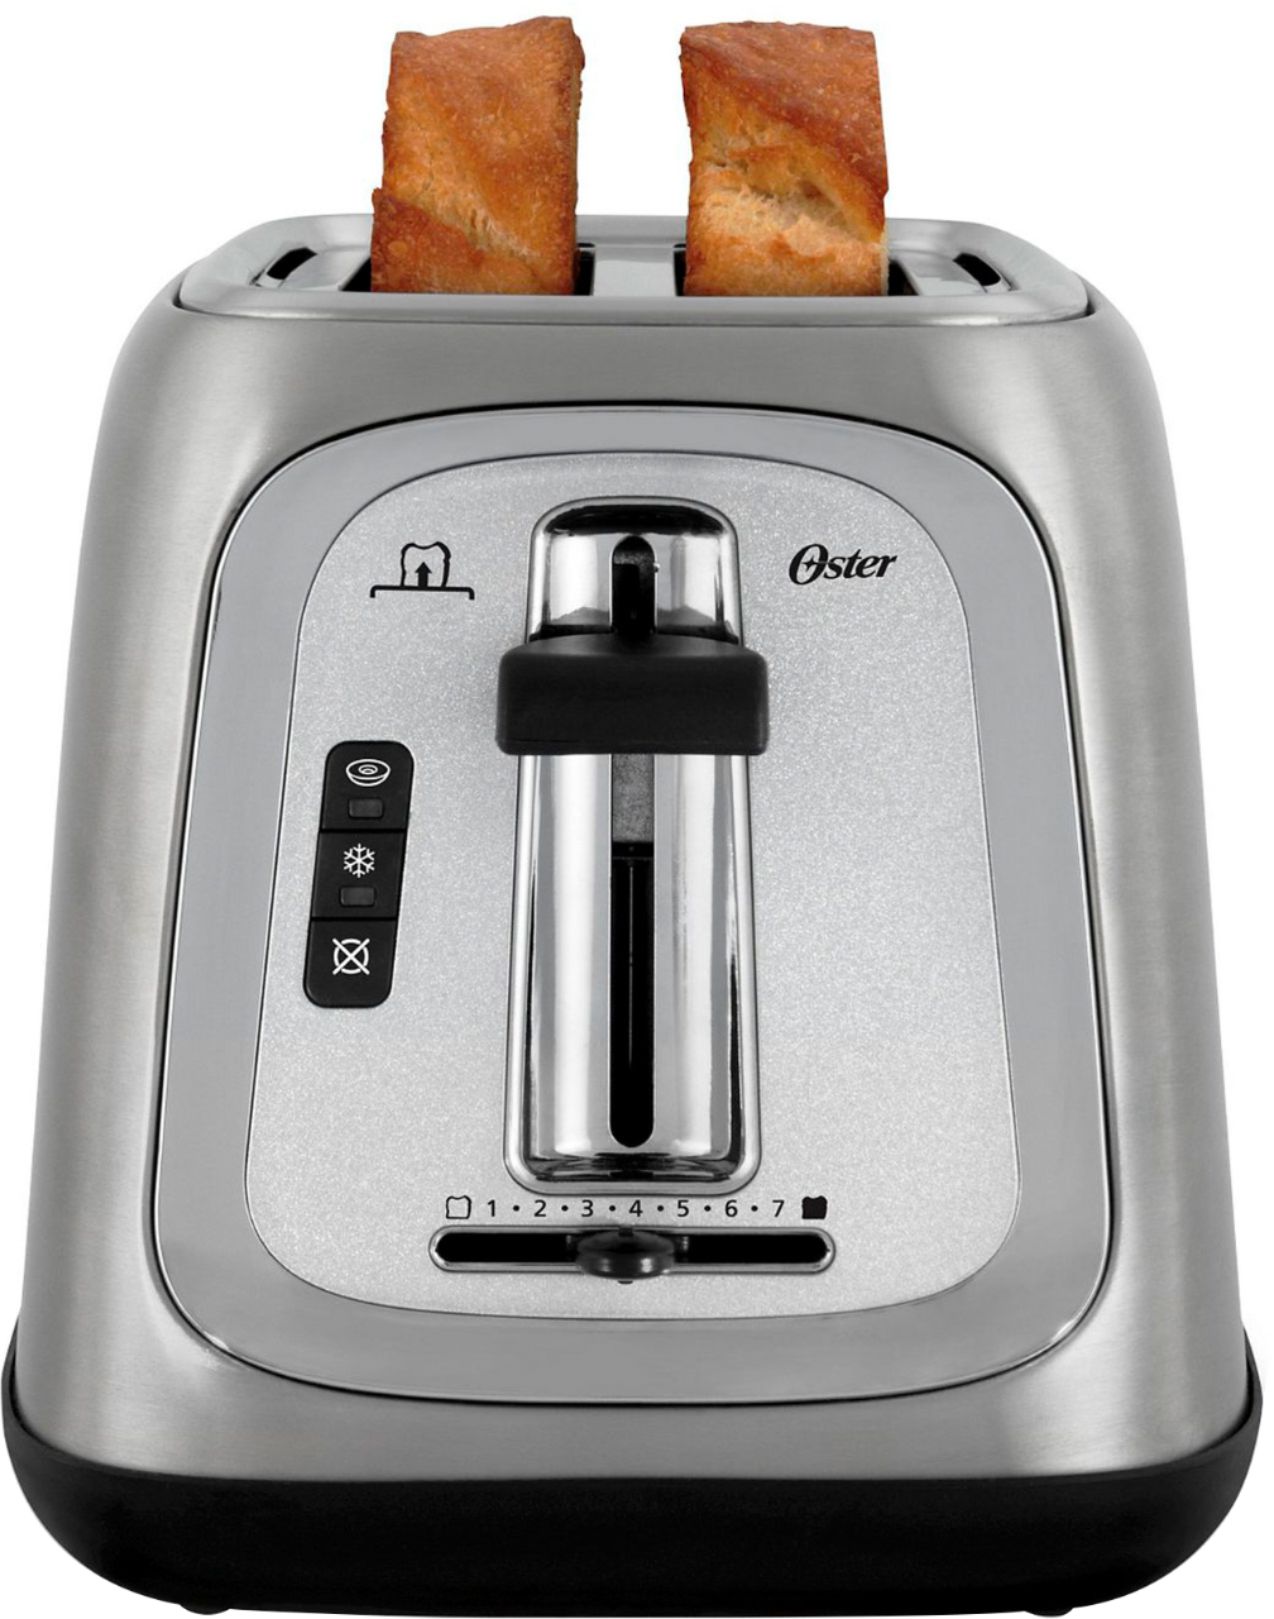 Oster TSSTTRJB29-033 2 Slice Toaster